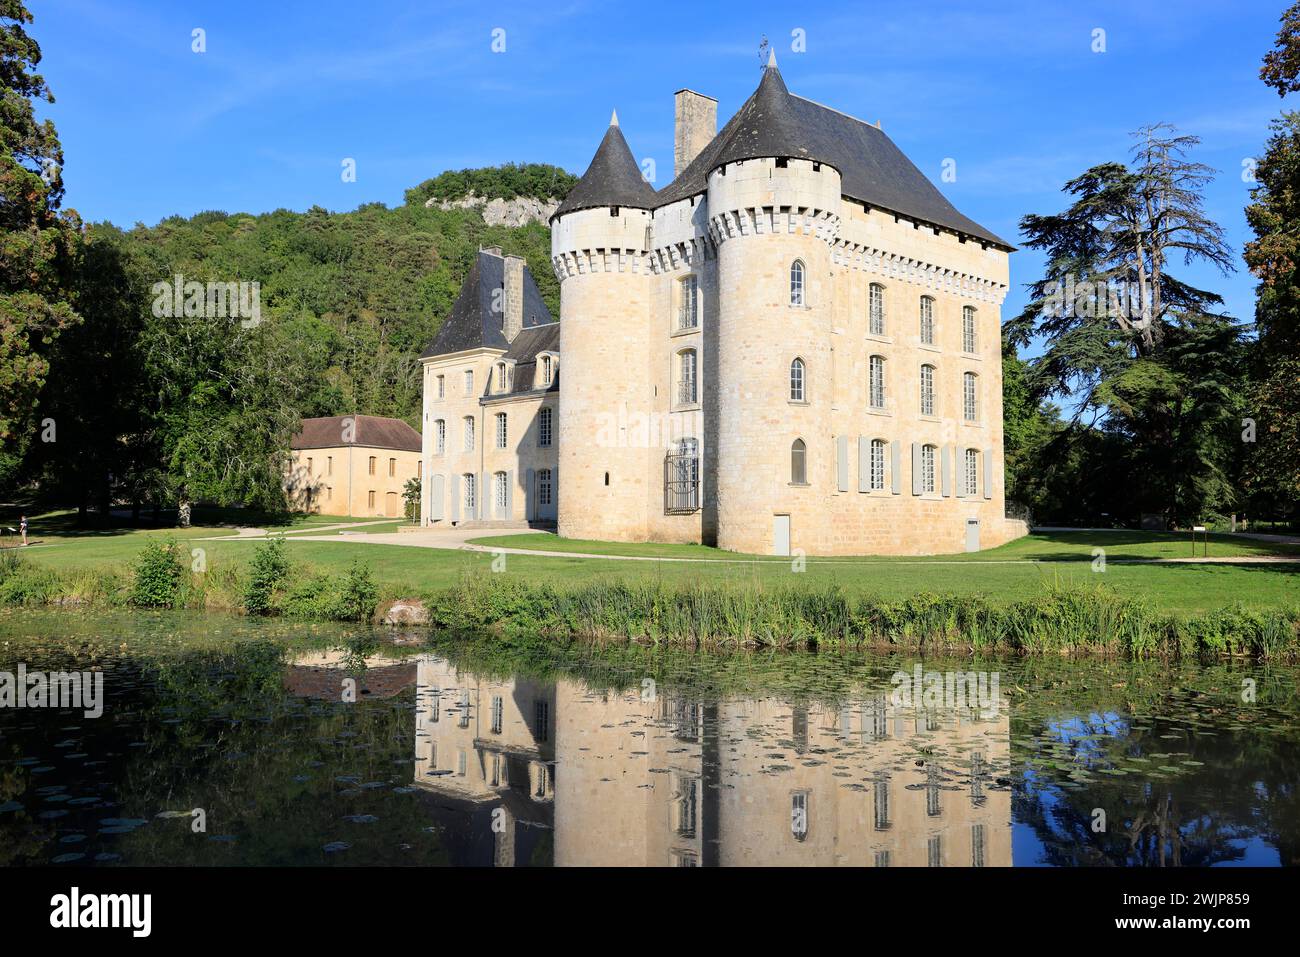 Das Château de Campagne in Périgord Noir mit seinem Park, der als bemerkenswerter Garten bezeichnet wird. Architektur, Umwelt, Natur, Bioreservat, Tourismus. Camp Stockfoto